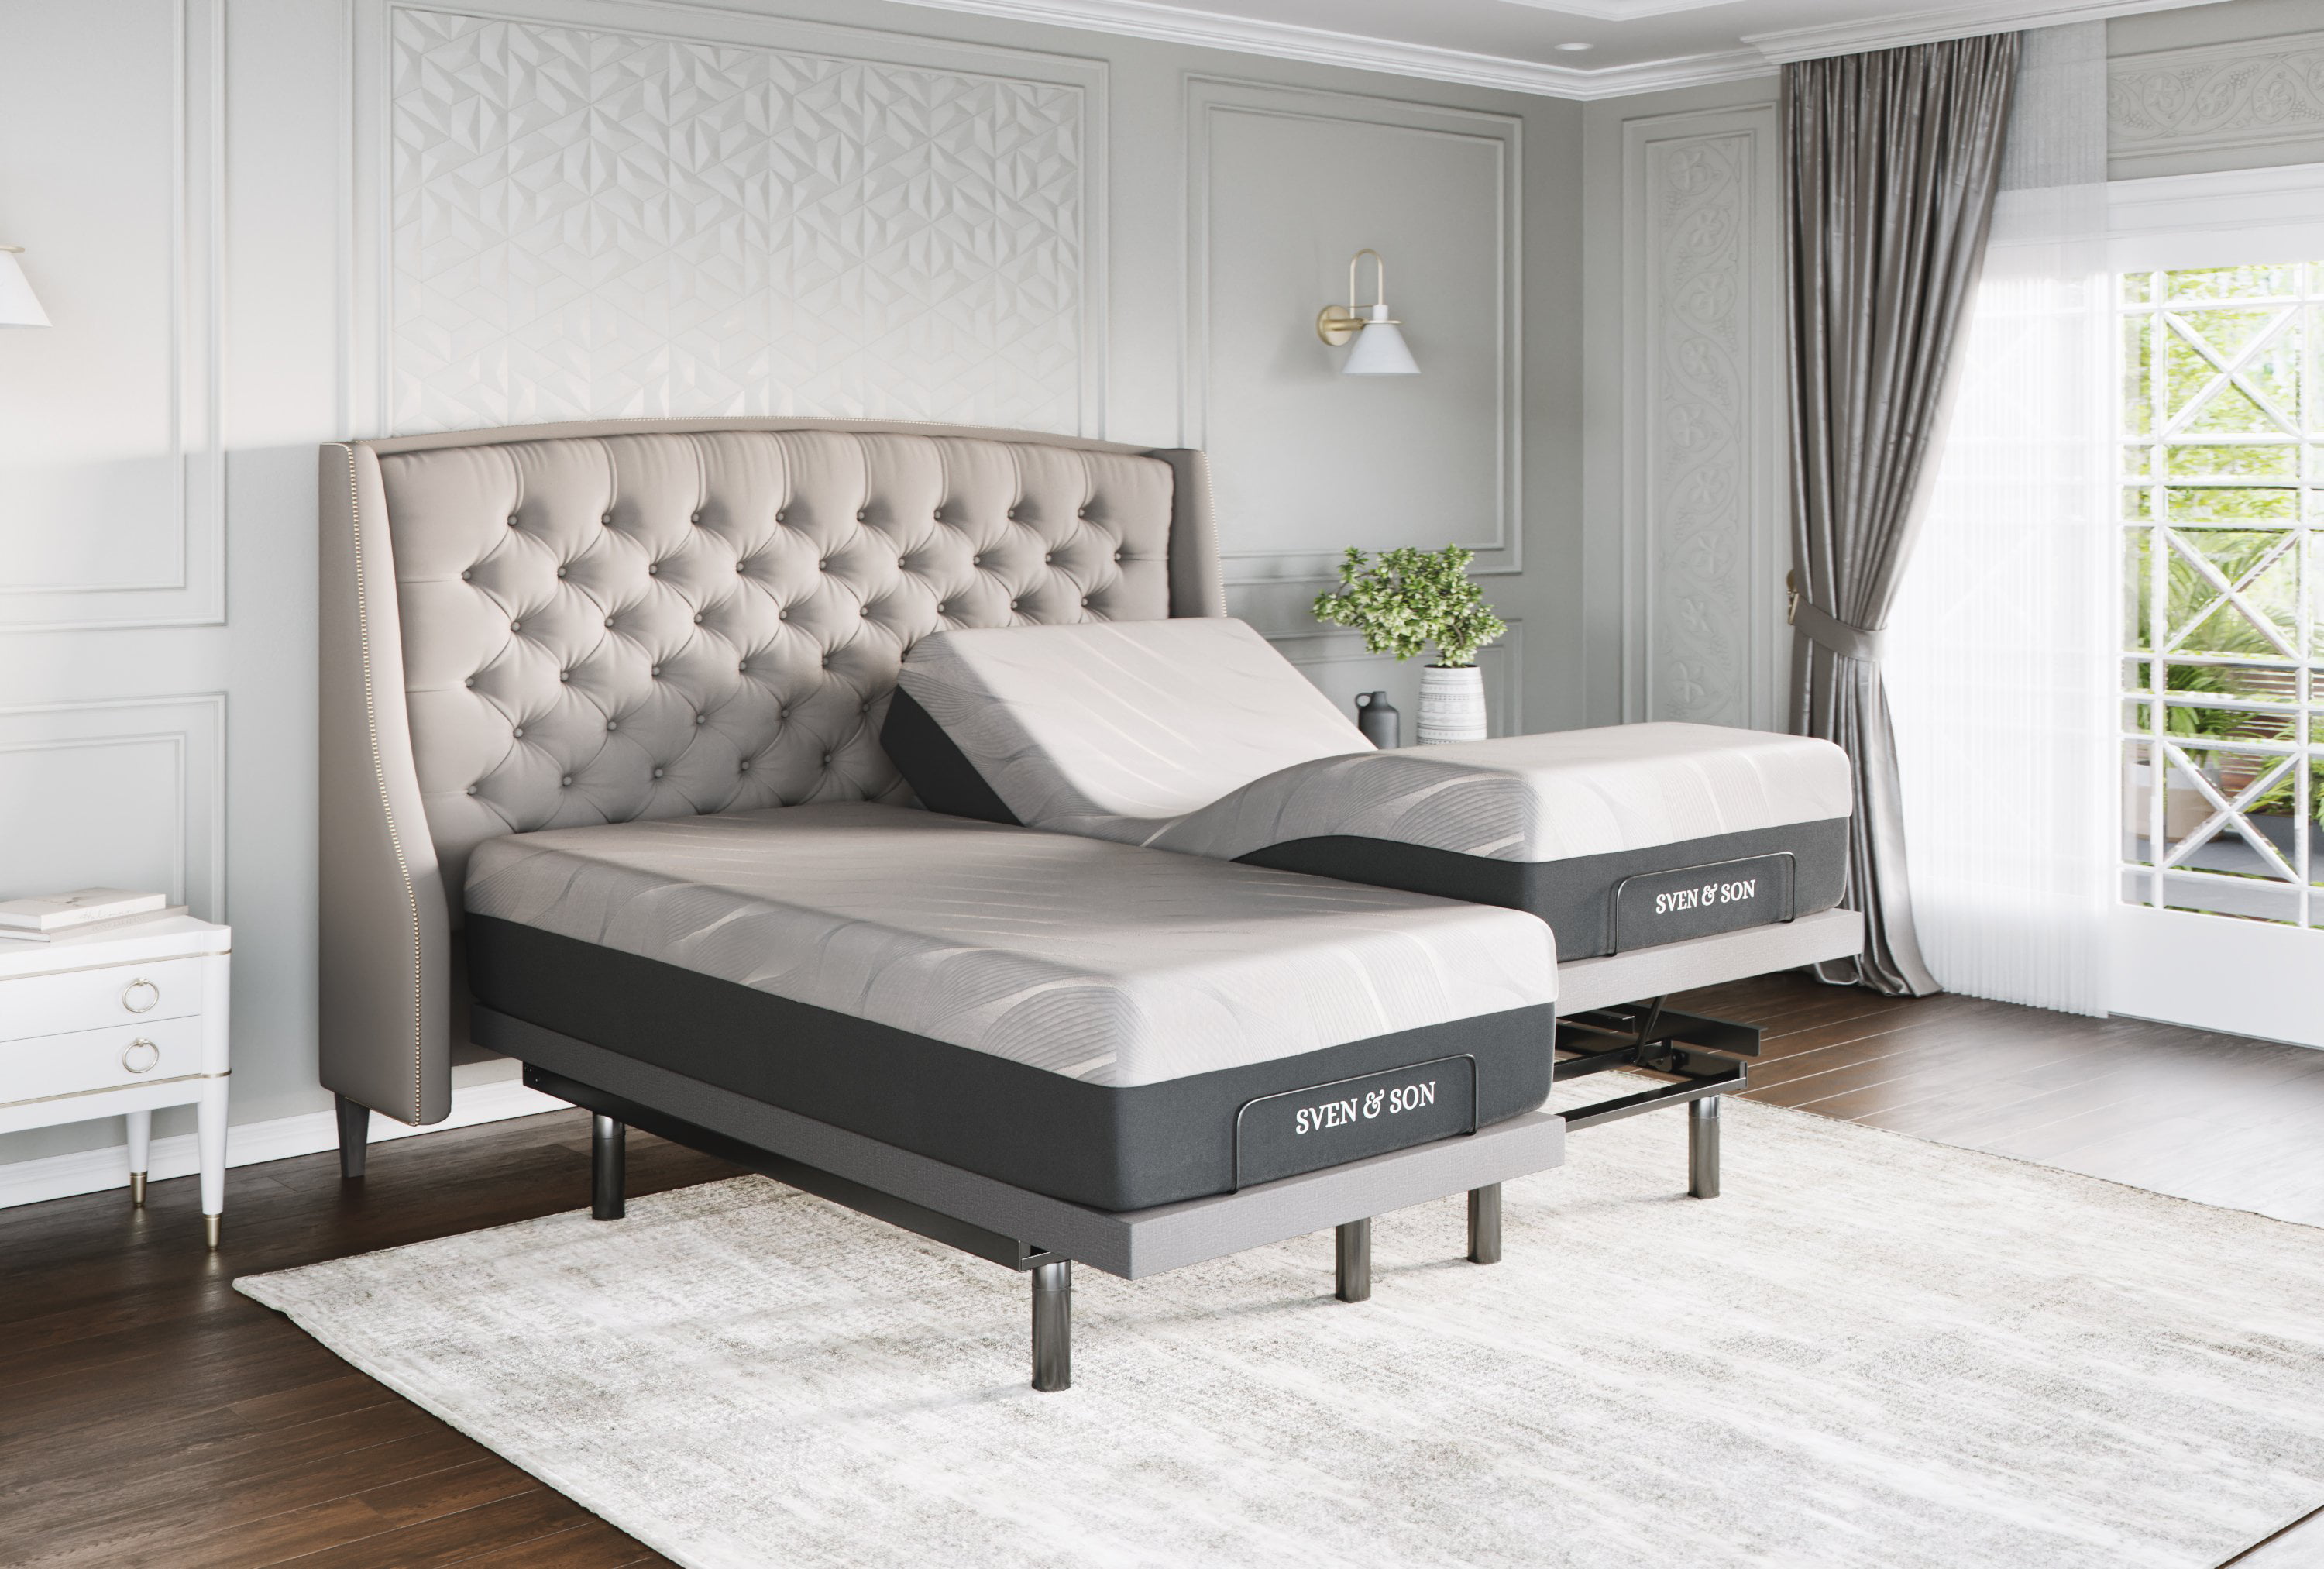 Sven Son Split King Adjustable Bed, Split King Adjustable Bed Frame With Massage